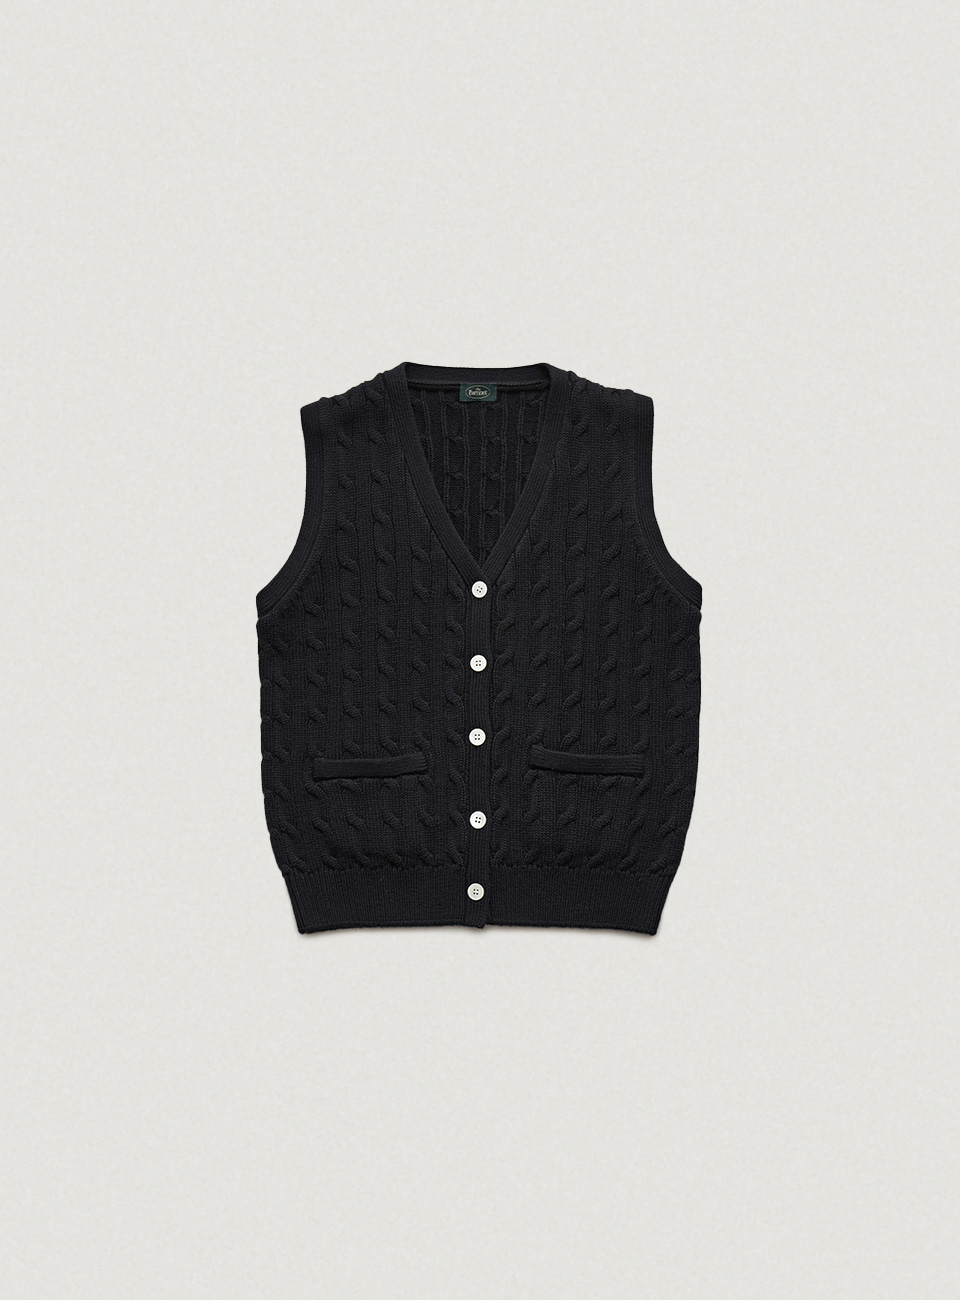 Black Anne Cable Knit Cardigan Vest